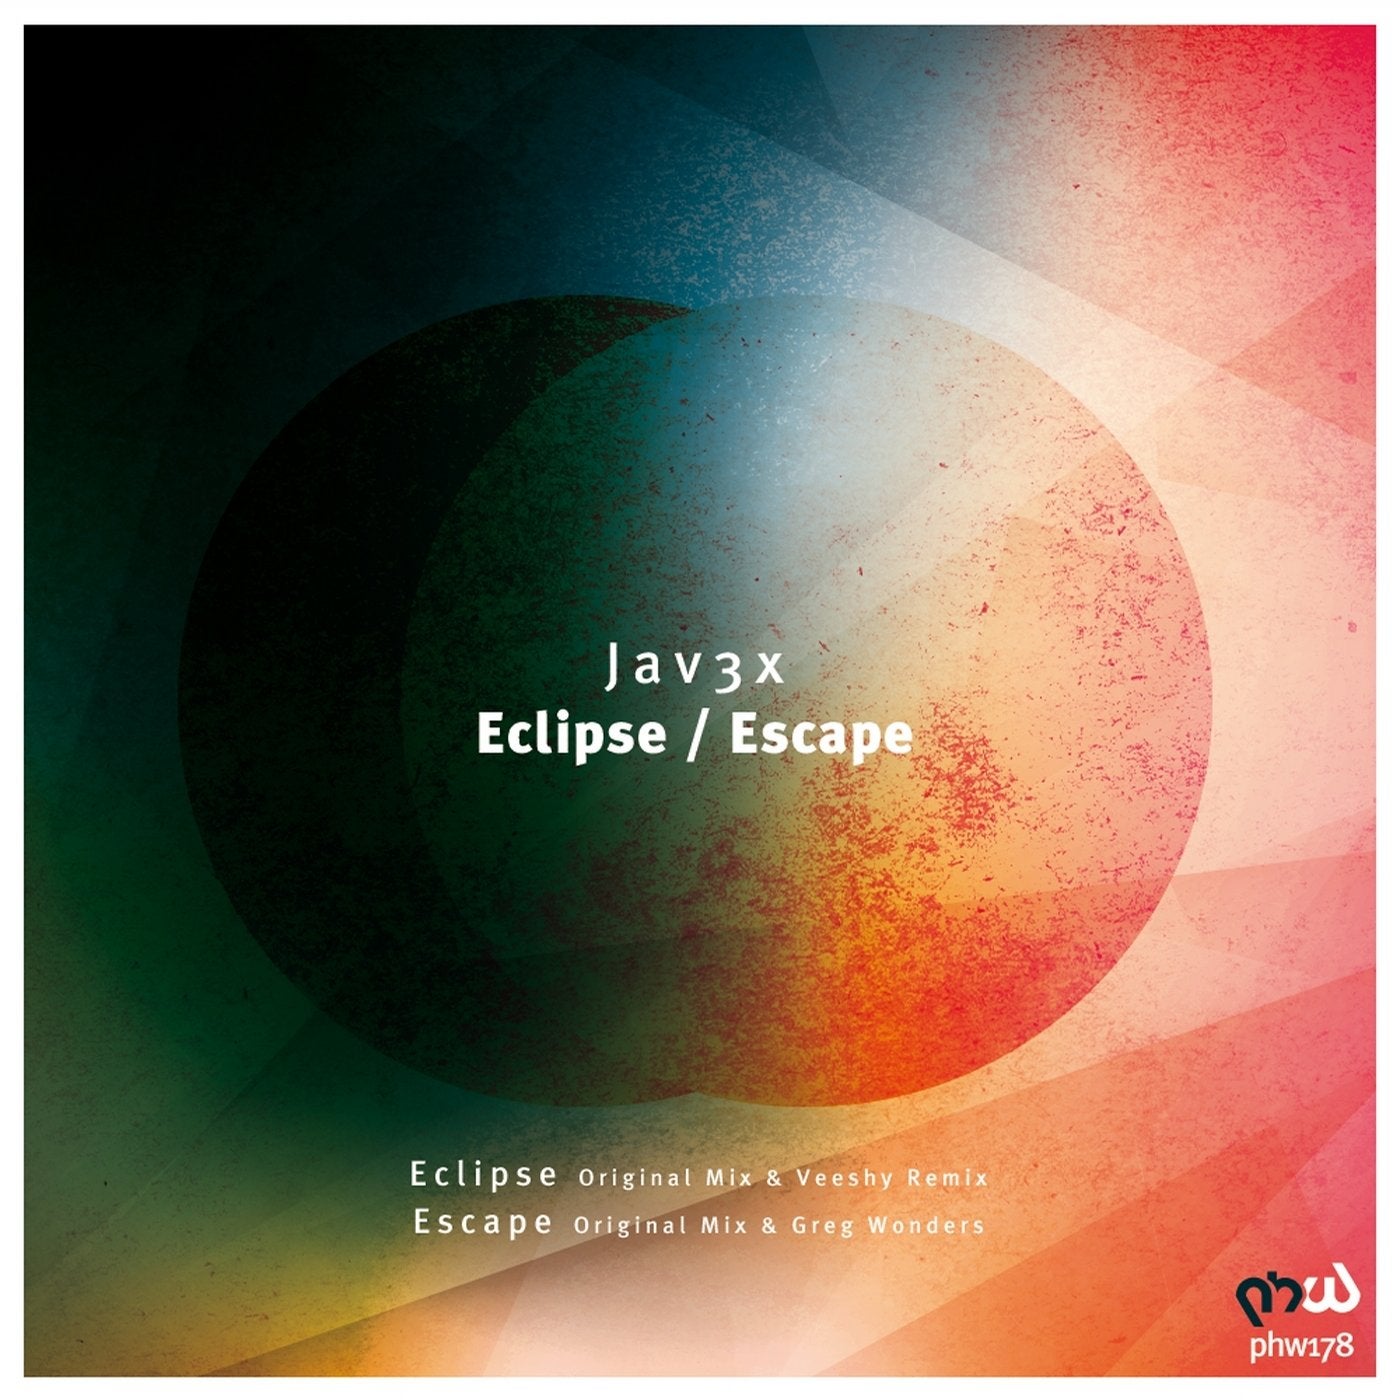 Eclipse / Escape